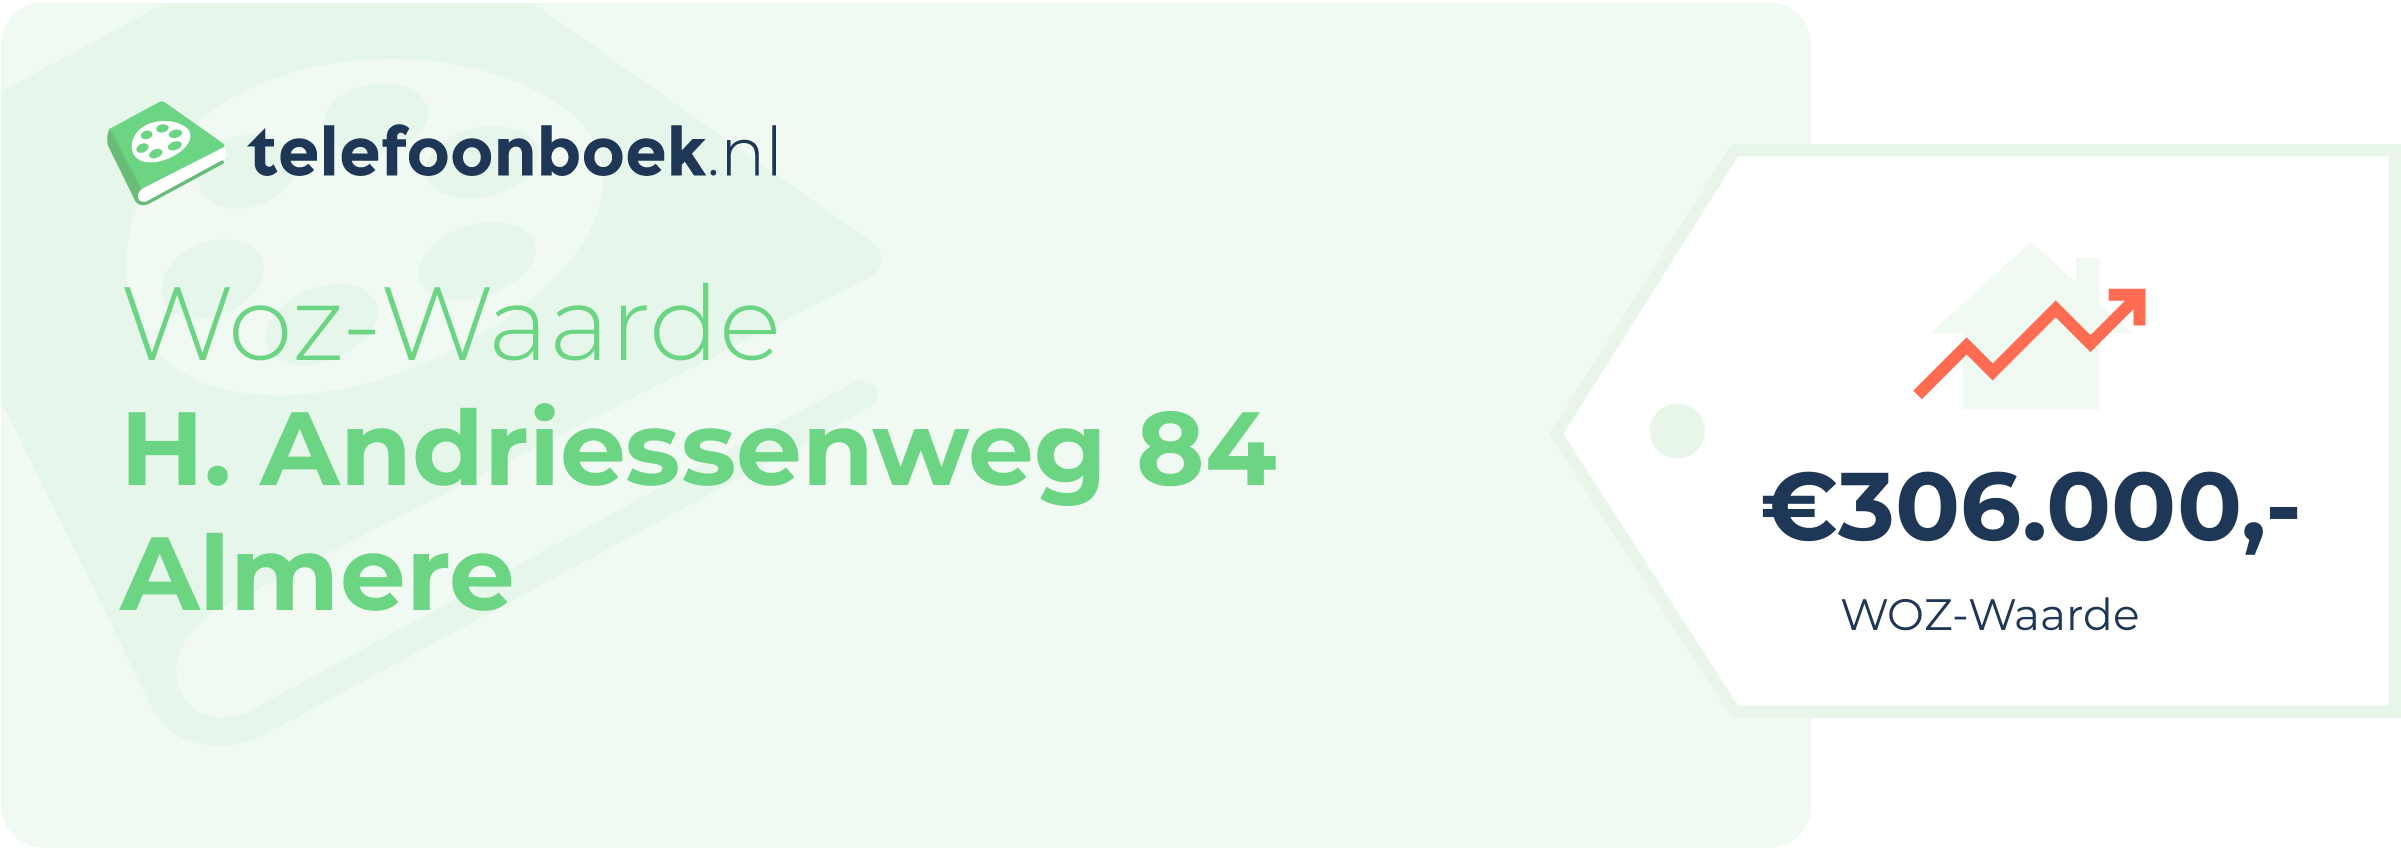 WOZ-waarde H. Andriessenweg 84 Almere